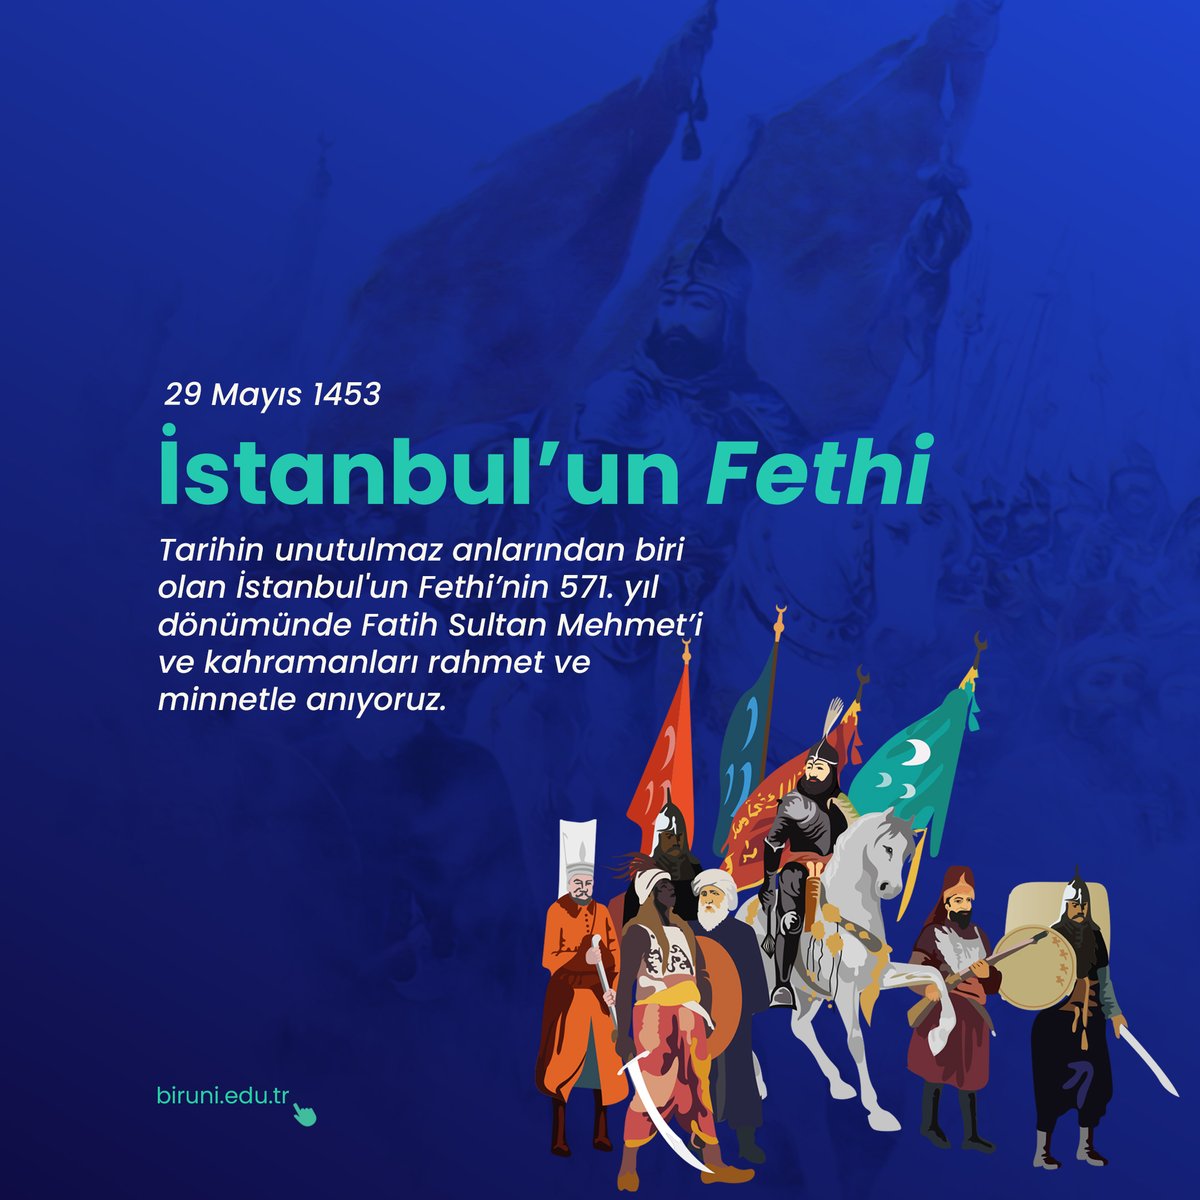 Tarihin unutulmaz anlarından biri olan İstanbul'un Fethi’nin 571. yıl dönümünde Fatih Sultan Mehmet’i ve kahramanları rahmet ve minnetle anıyoruz.